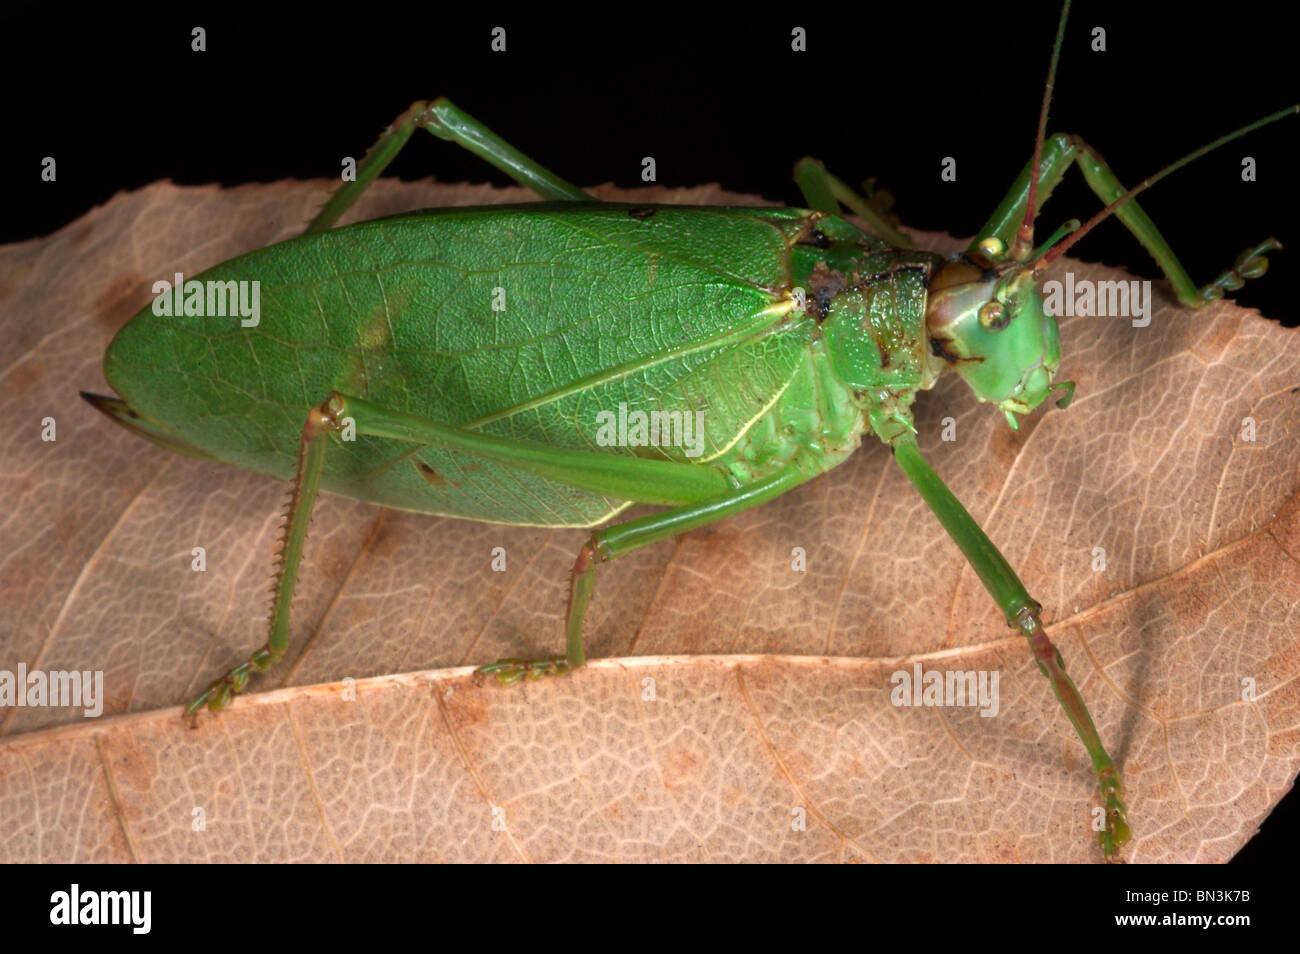 katydid on a leaf Stock Photo